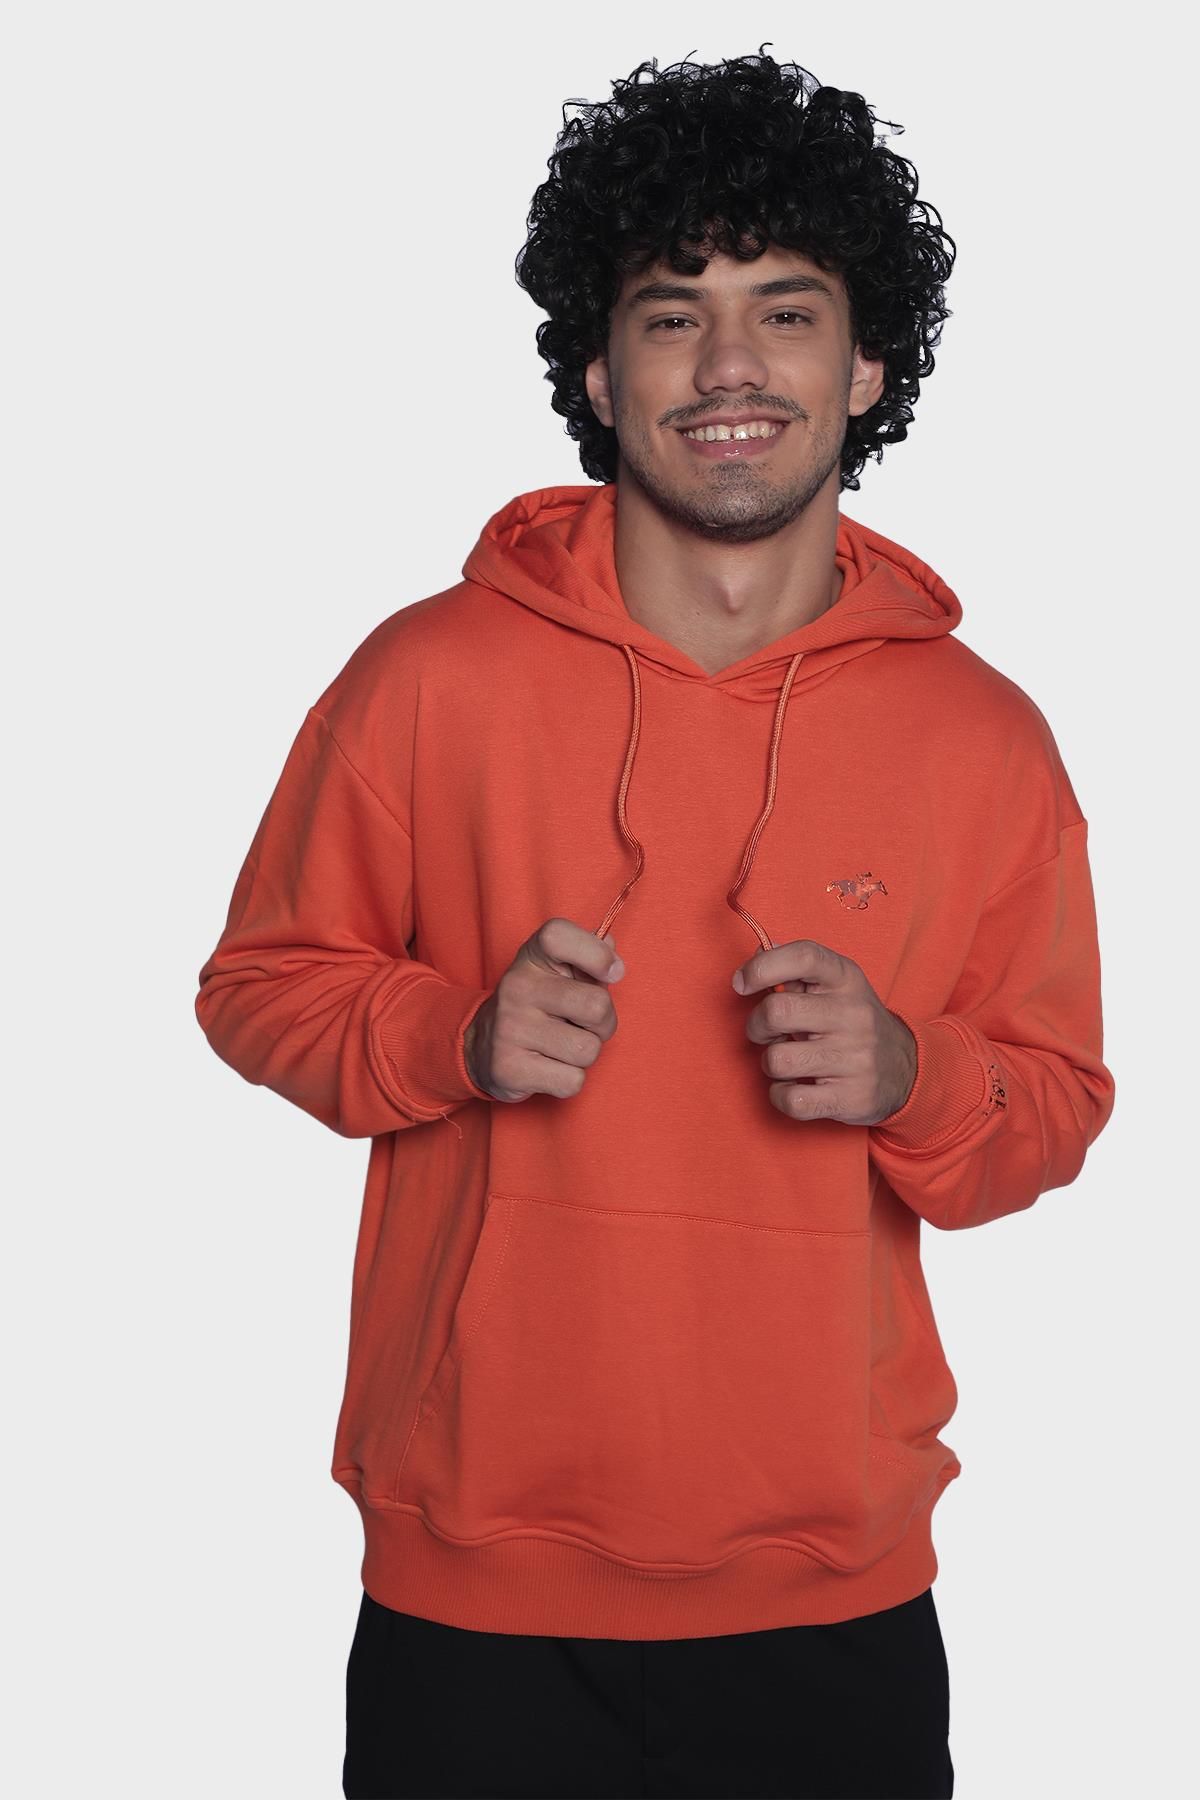 Мужская толстовка с капюшоном и длинными рукавами - Оранжевый